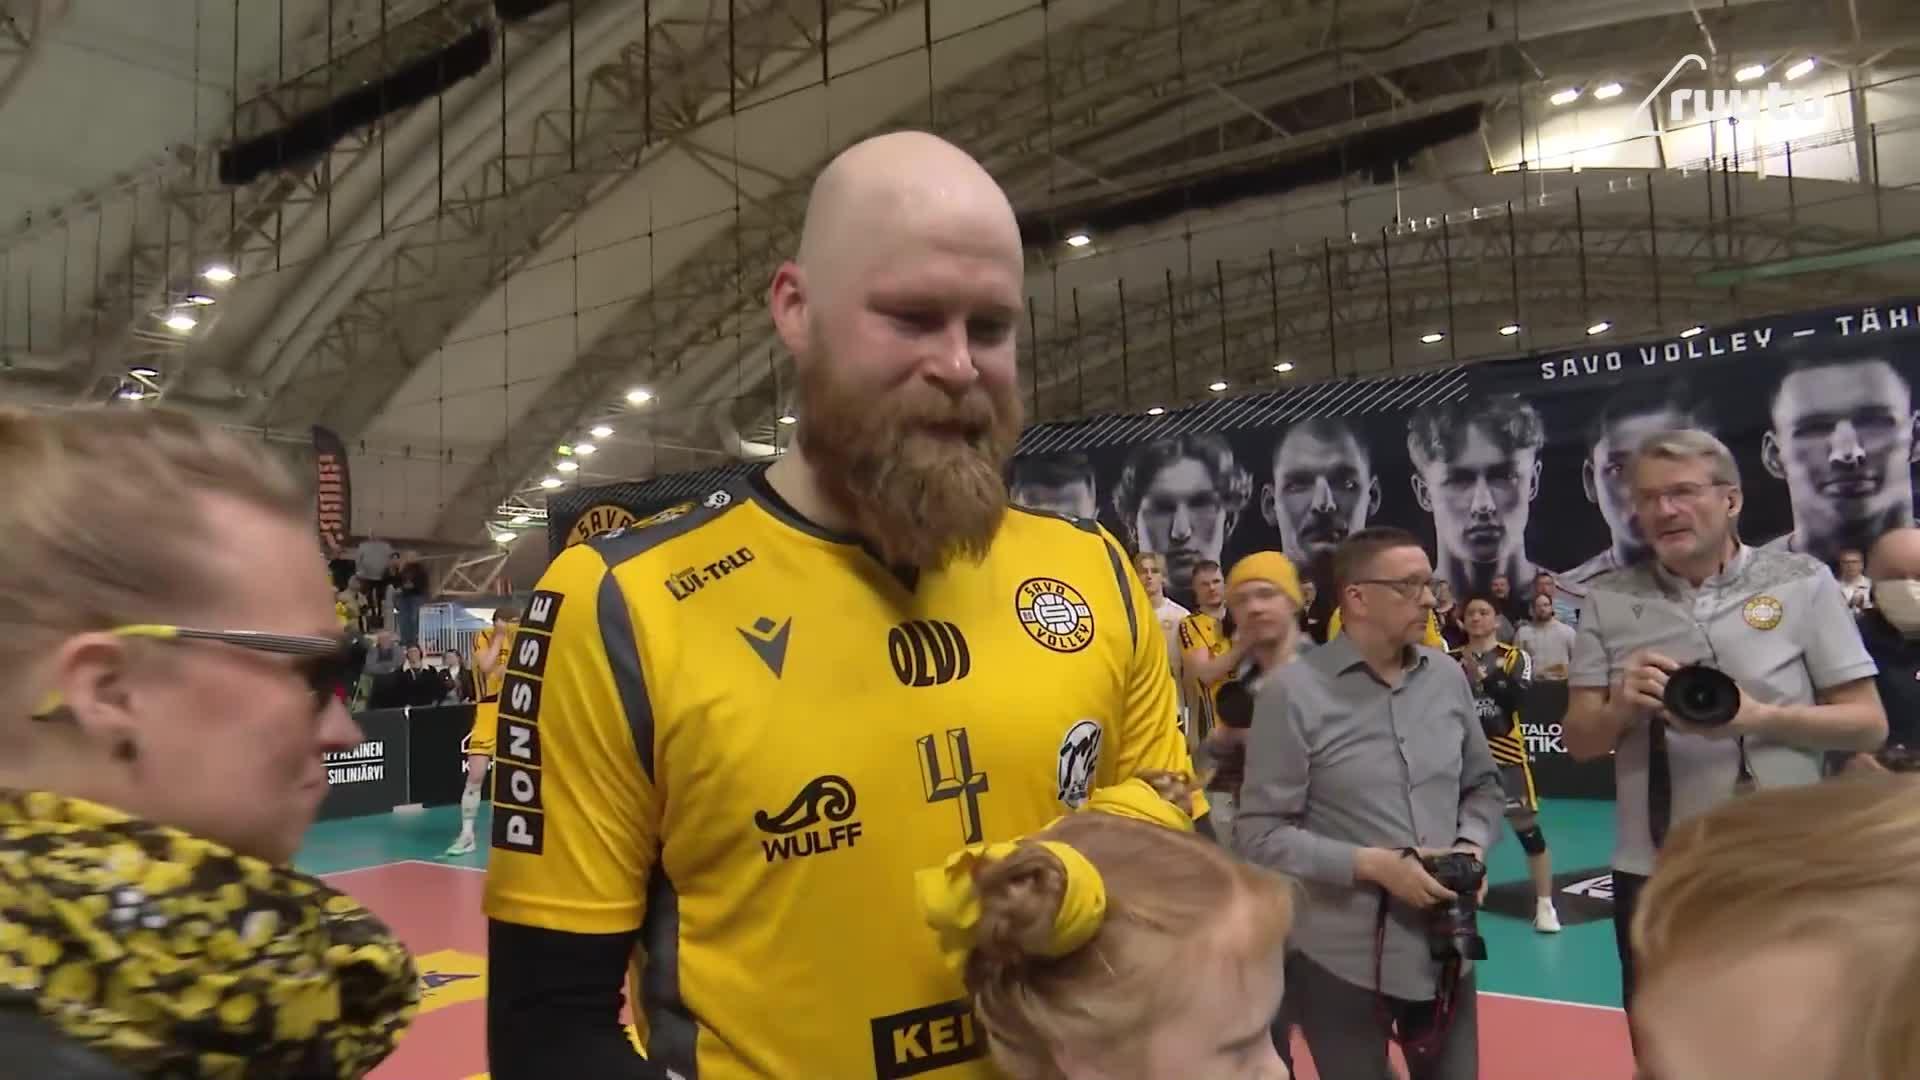 Tässä silmäkulma kostuu - Savo Volley ja upea Kuopio-Hallin yleisö antaa tunteikkaat jäähyväiset Siltalalle ja Ojansivulle